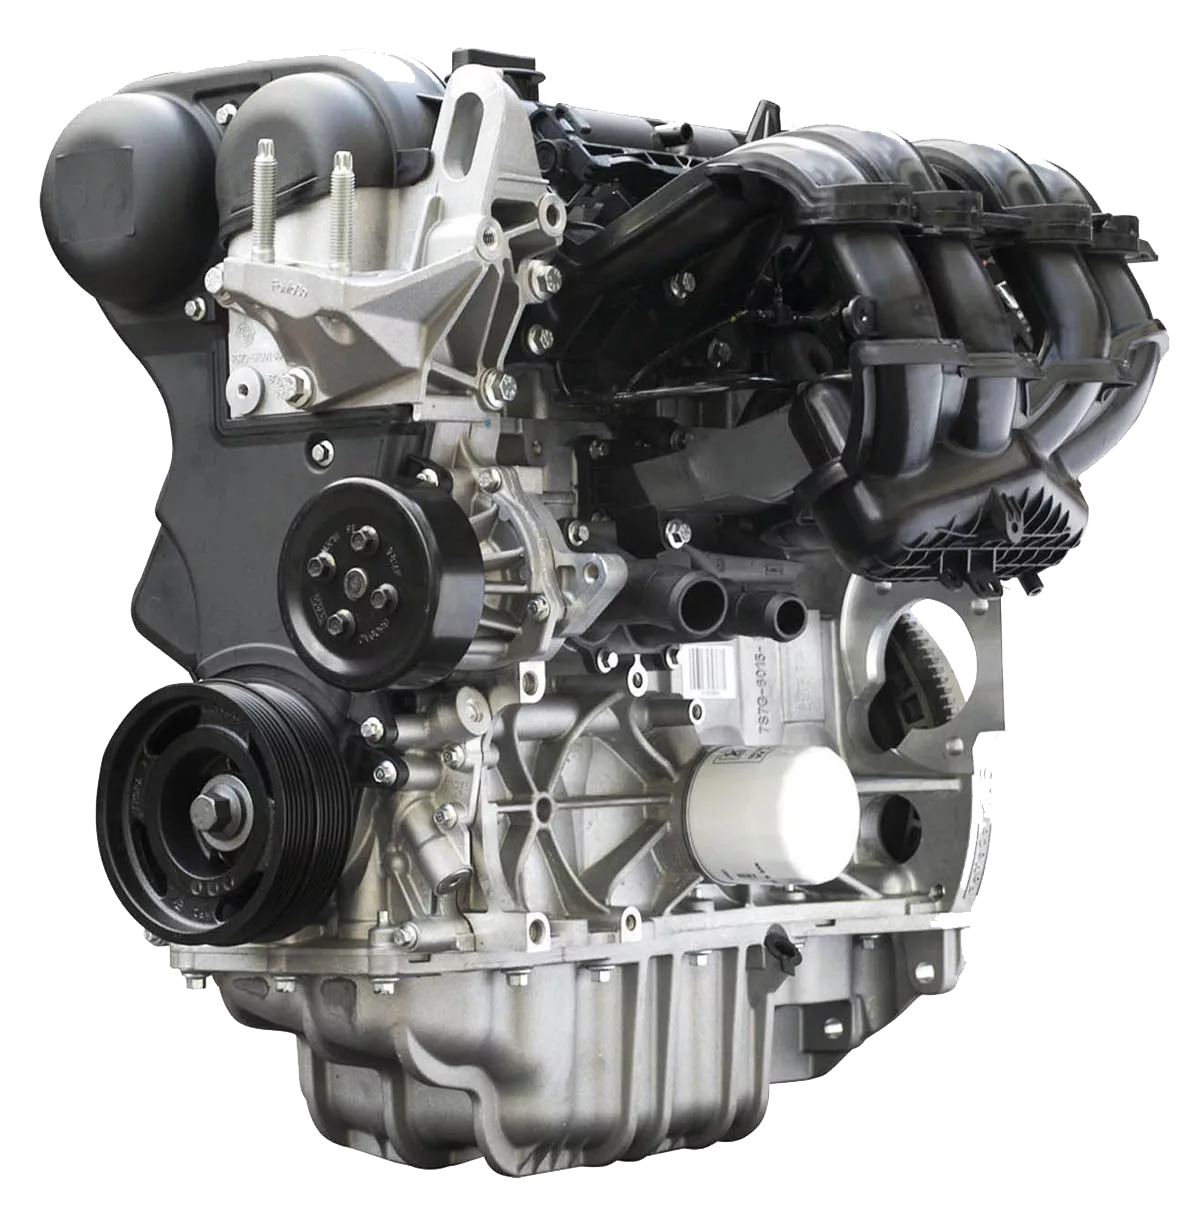 Двигатель Форд фокус 1.6 Duratec. Duratec 1.6 ti-VCT 115 Л.С. Двигатель Форд фокус 1 1.6. Мотор Форд фокус 2 1.6 100 л.с. Двигатель сигма